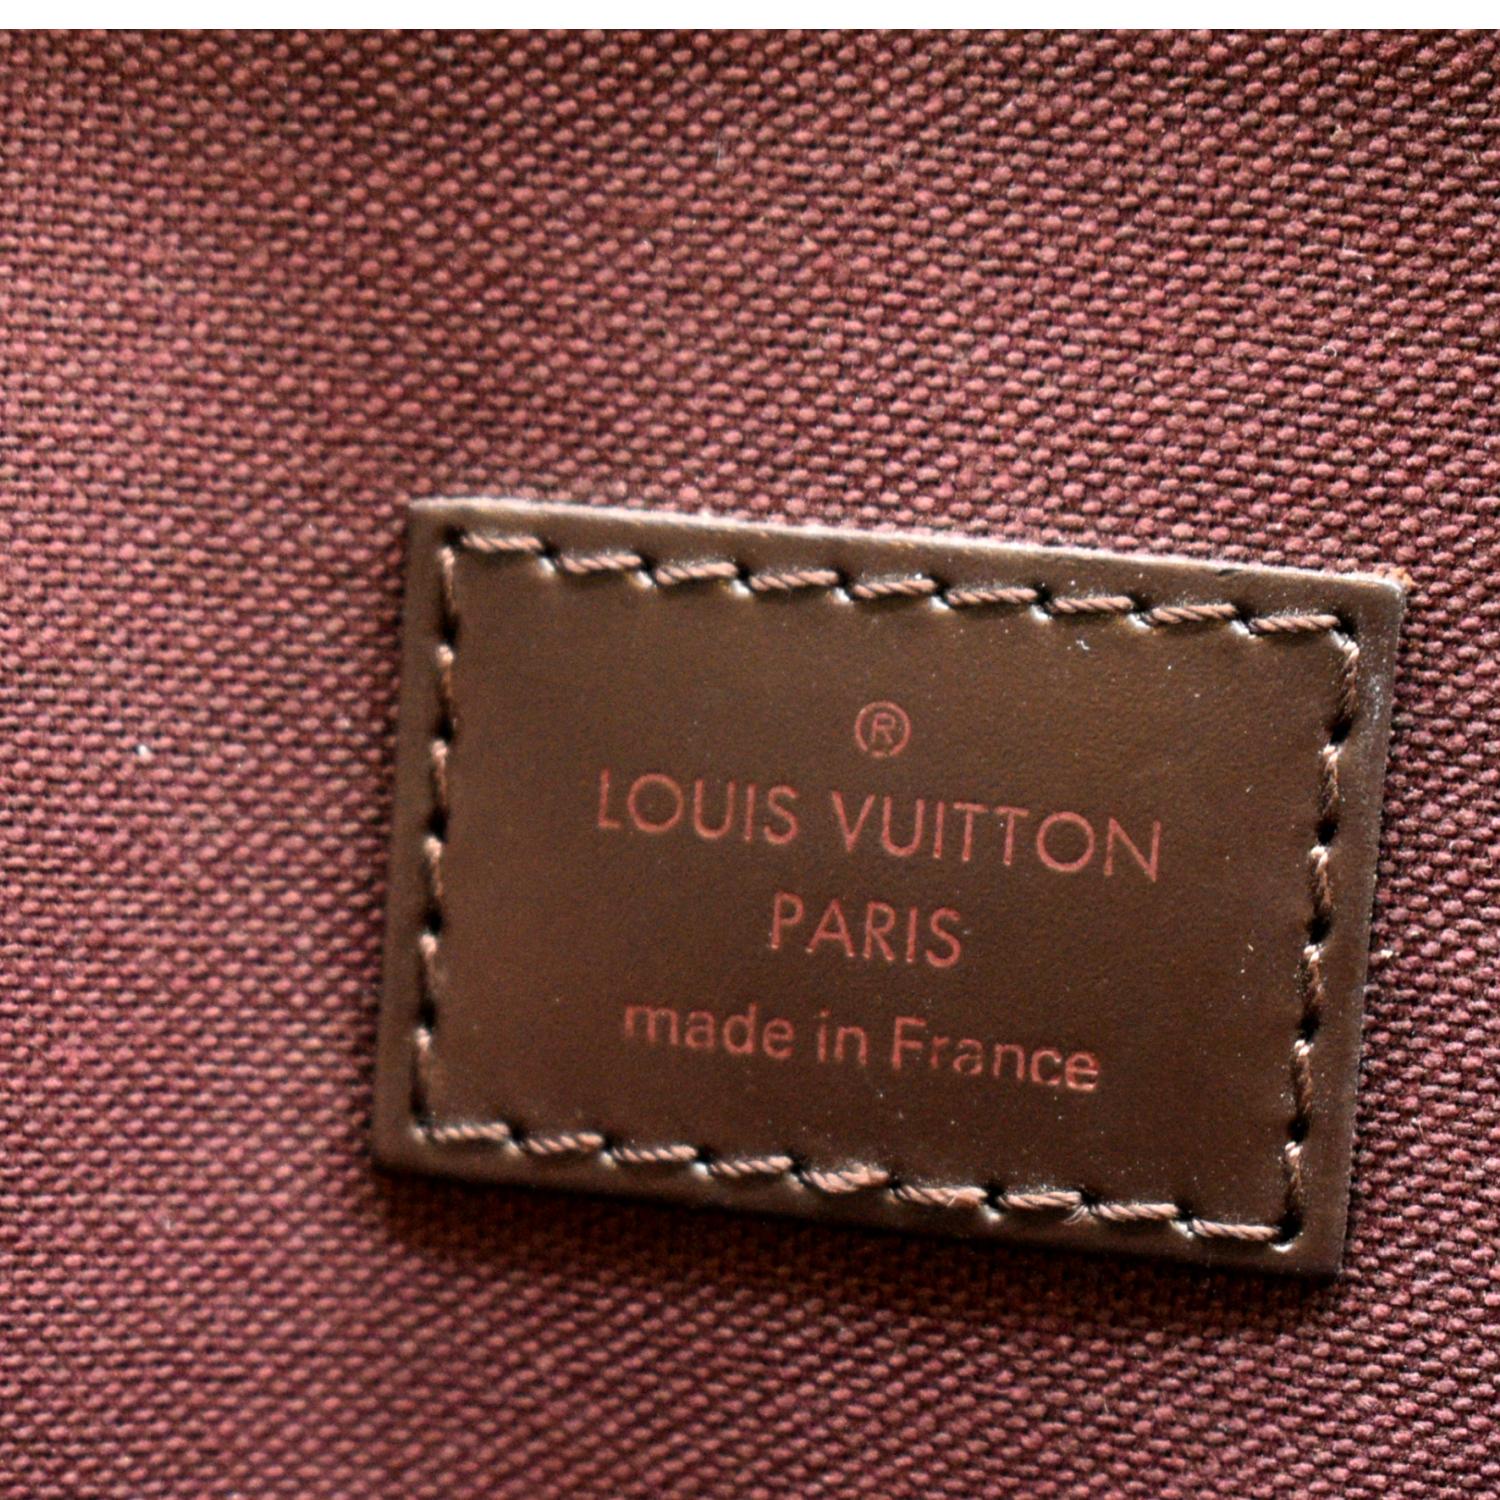 Date Code & Stamp] Louis Vuitton Hoxton PM Damier Ébène Canvas